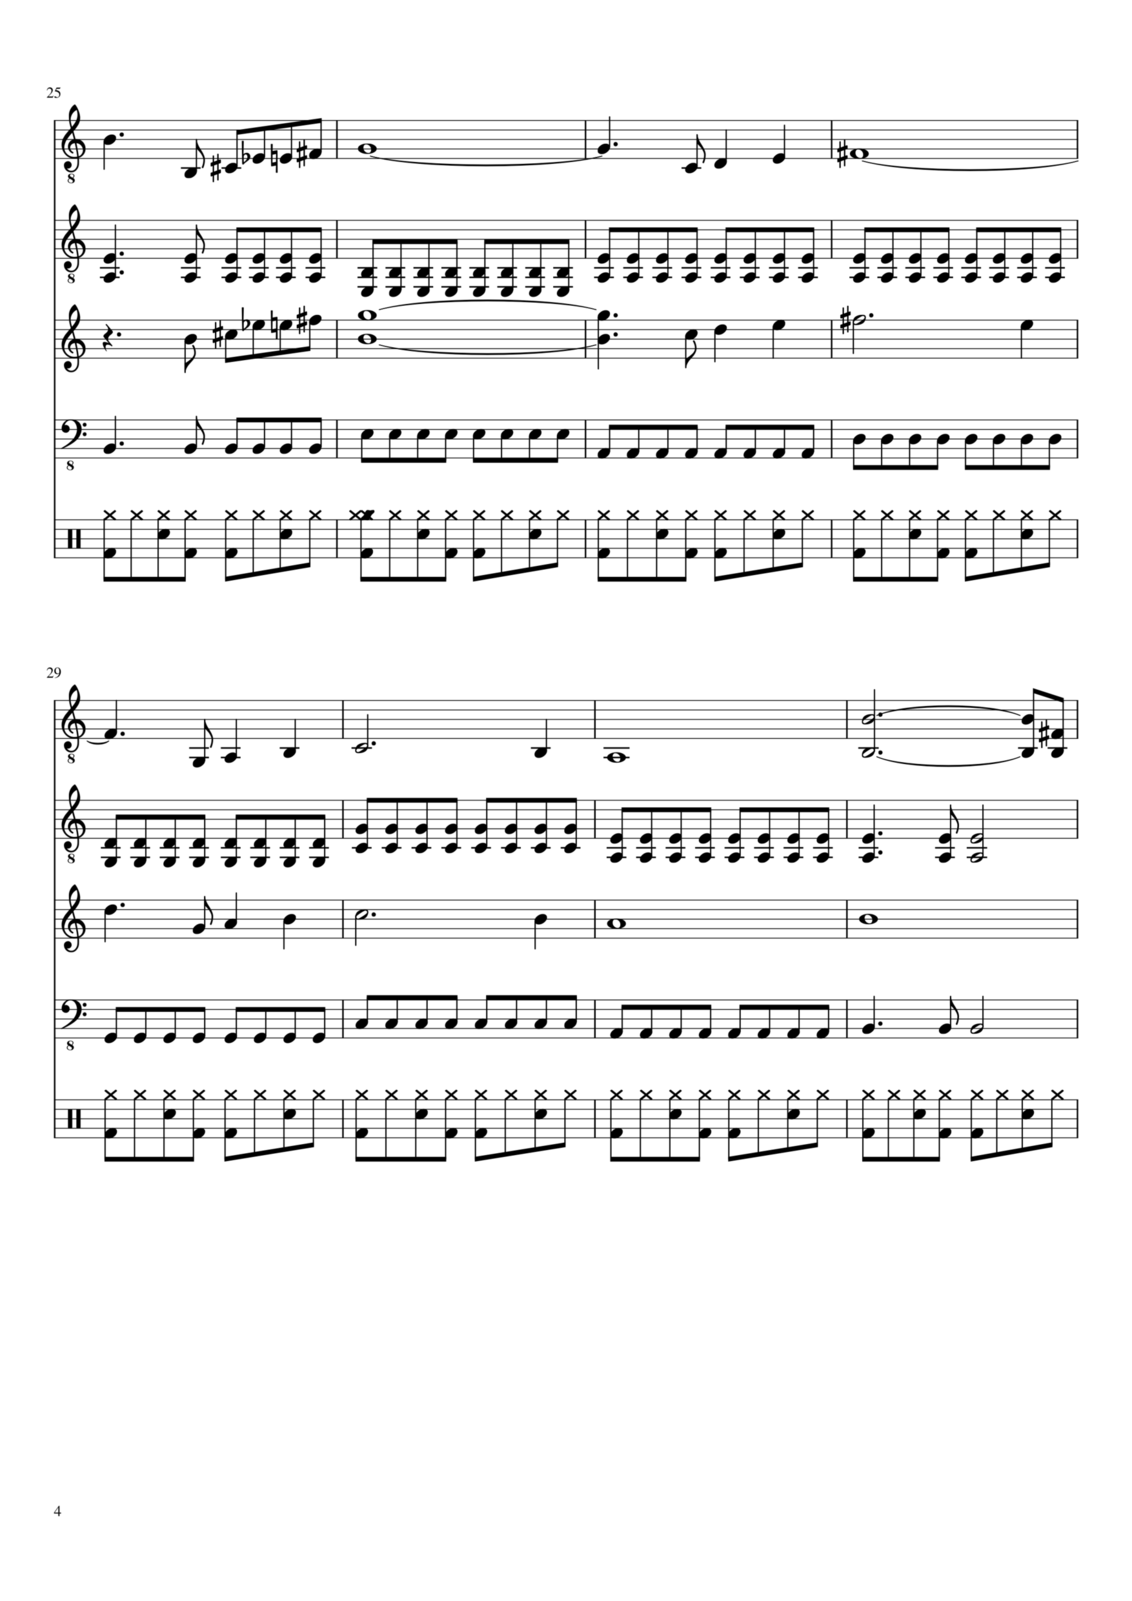 Vospominaniya o byiloy lyubvi slide, Image 4